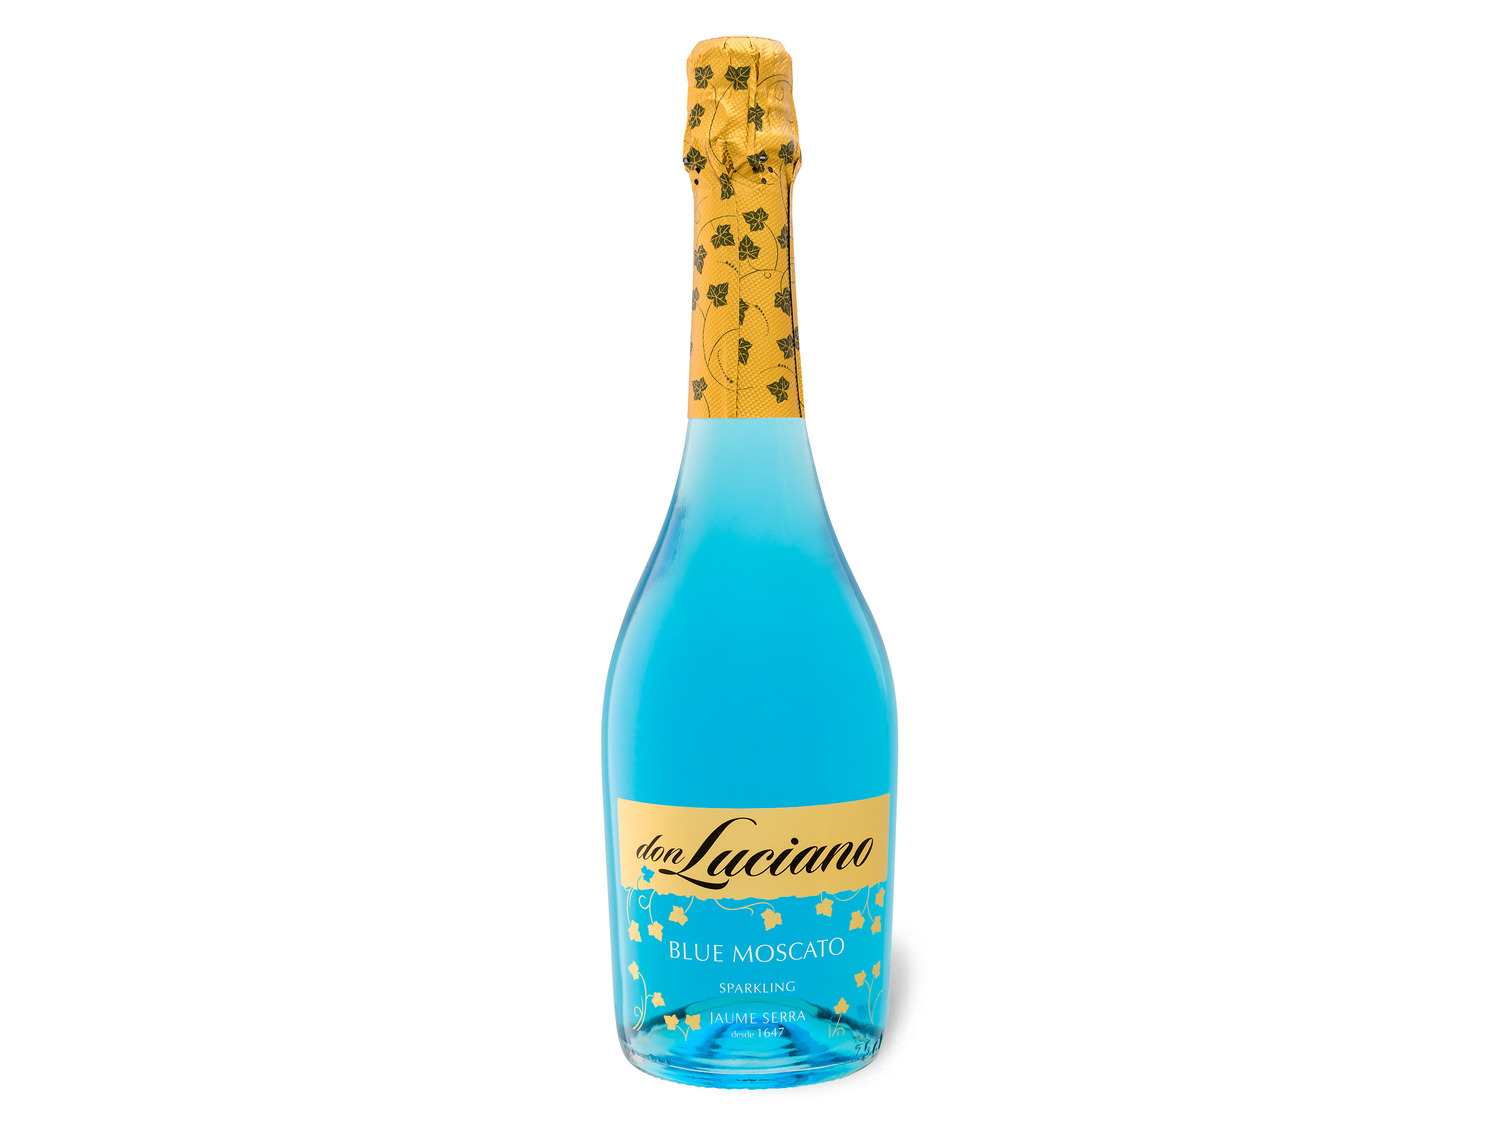 Don Serra Luciano aromatischer Moscato Qualitätsschaumwein Blue Jaume süß